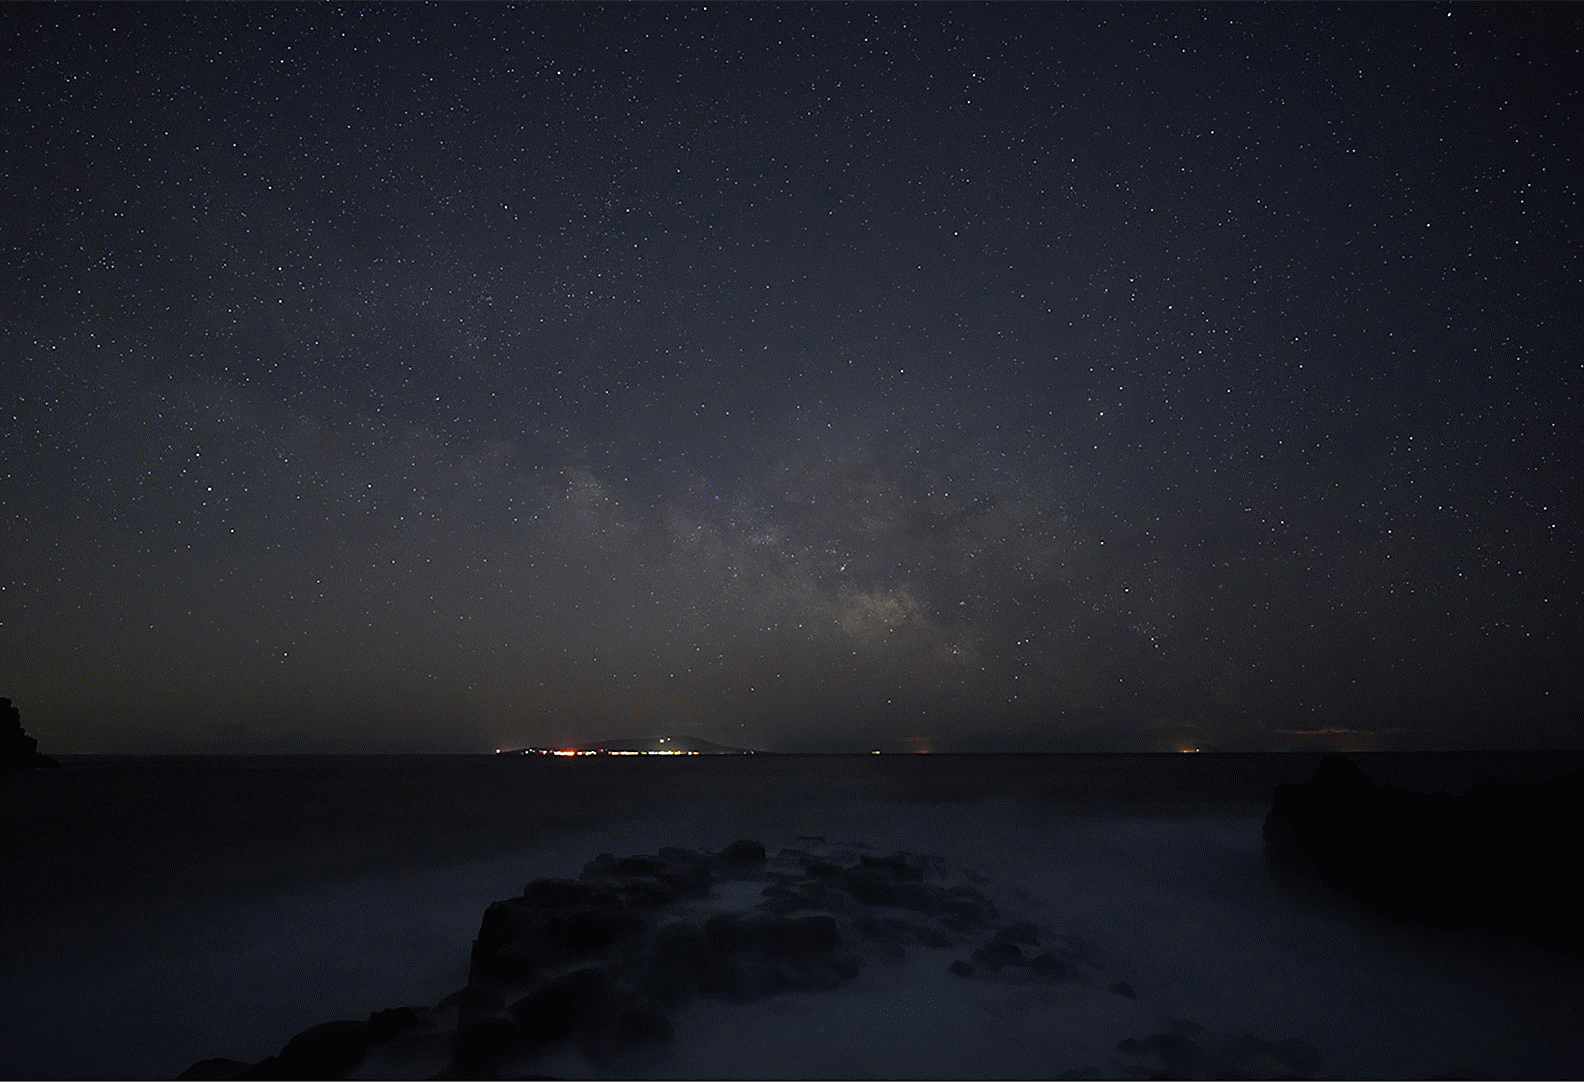 Sternenhimmel-Foto, das die Milchstraße über dem Meer zeigt